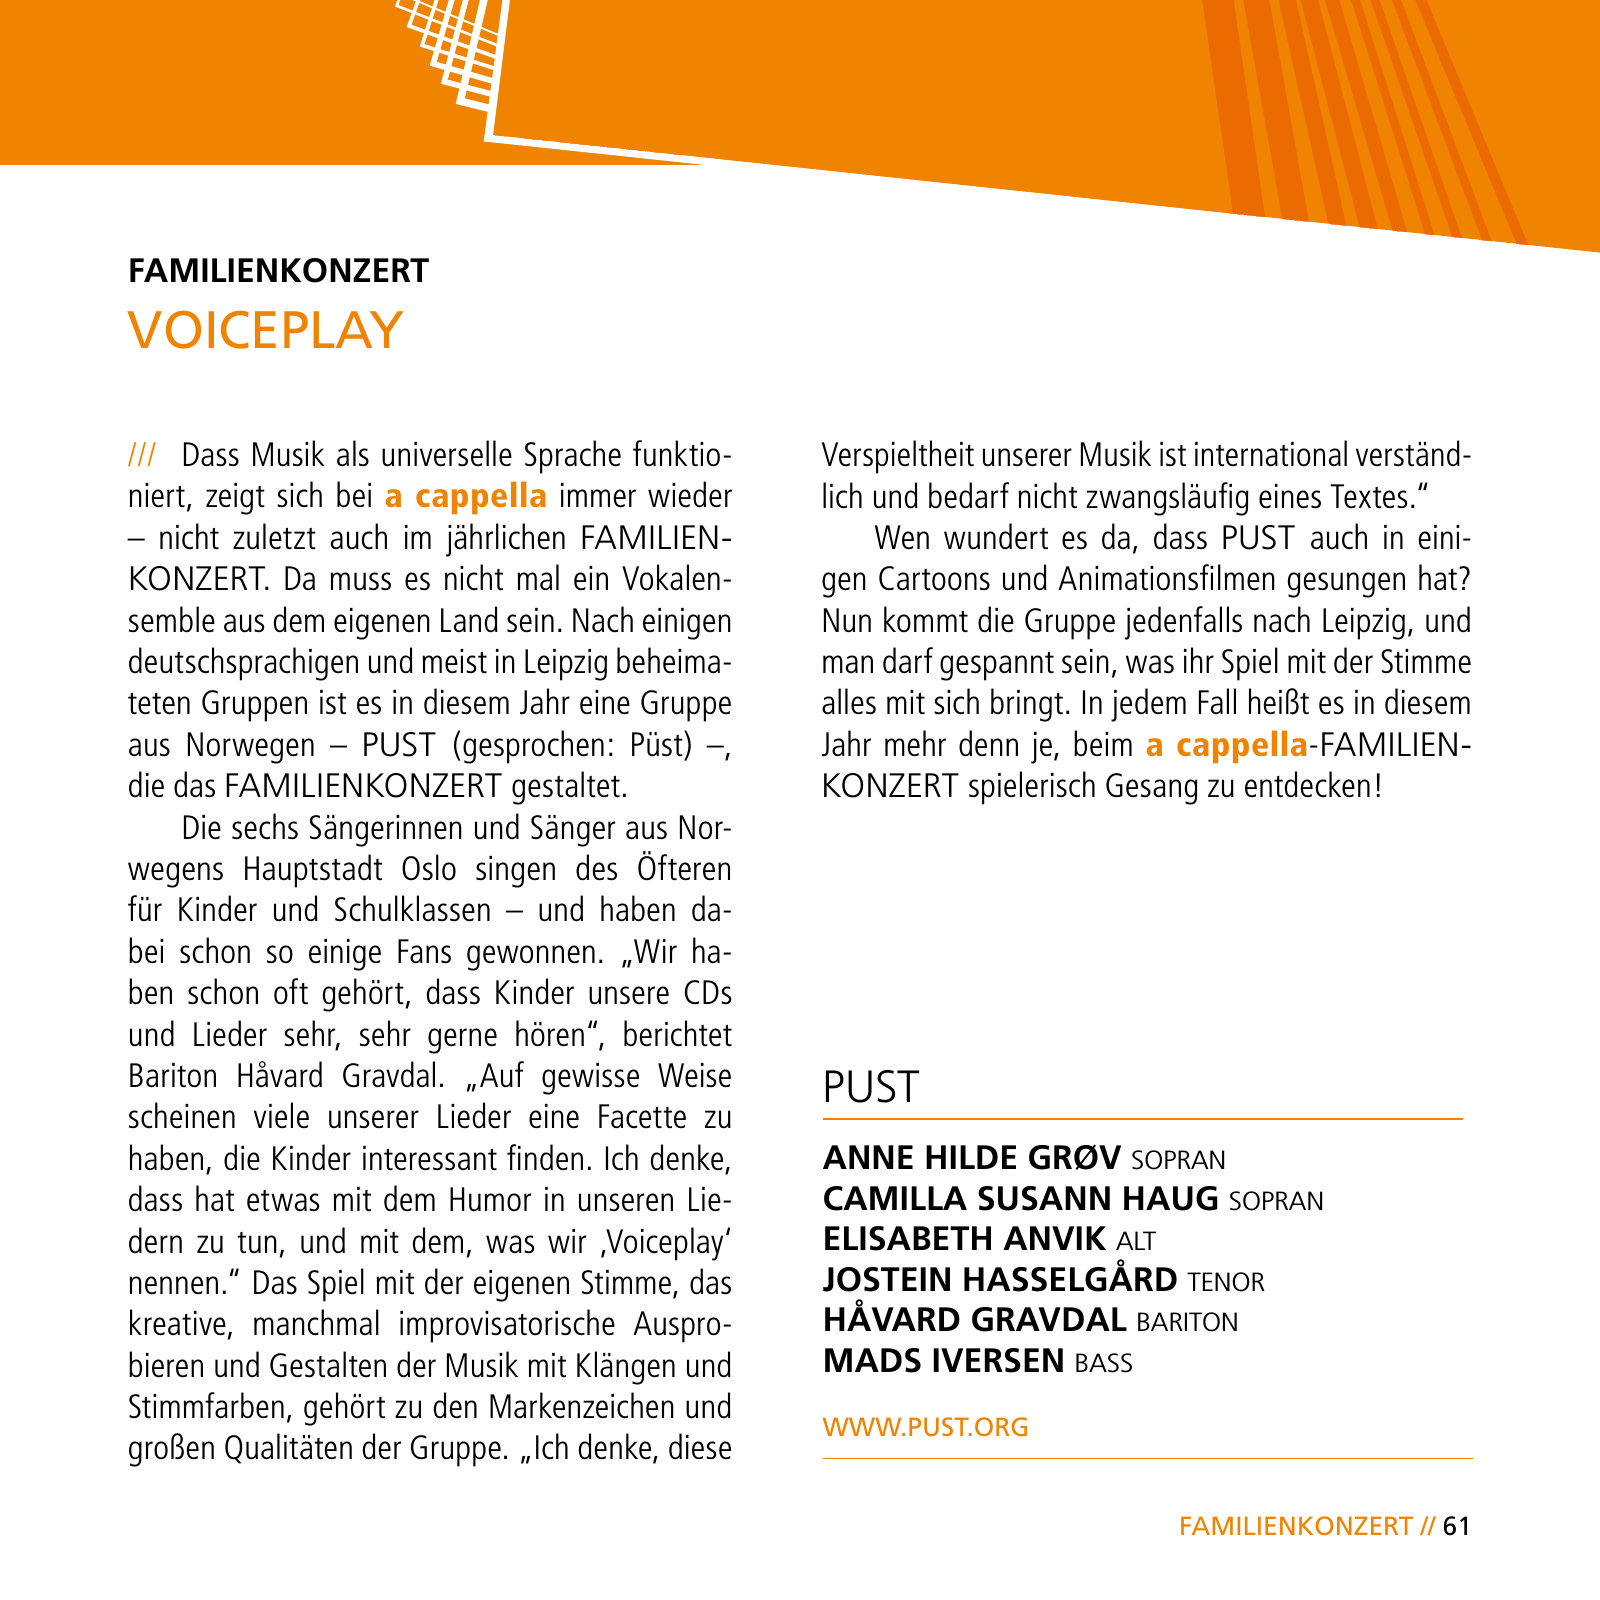 Vorschau E-Paper Festival a cappella 2015 Seite 63